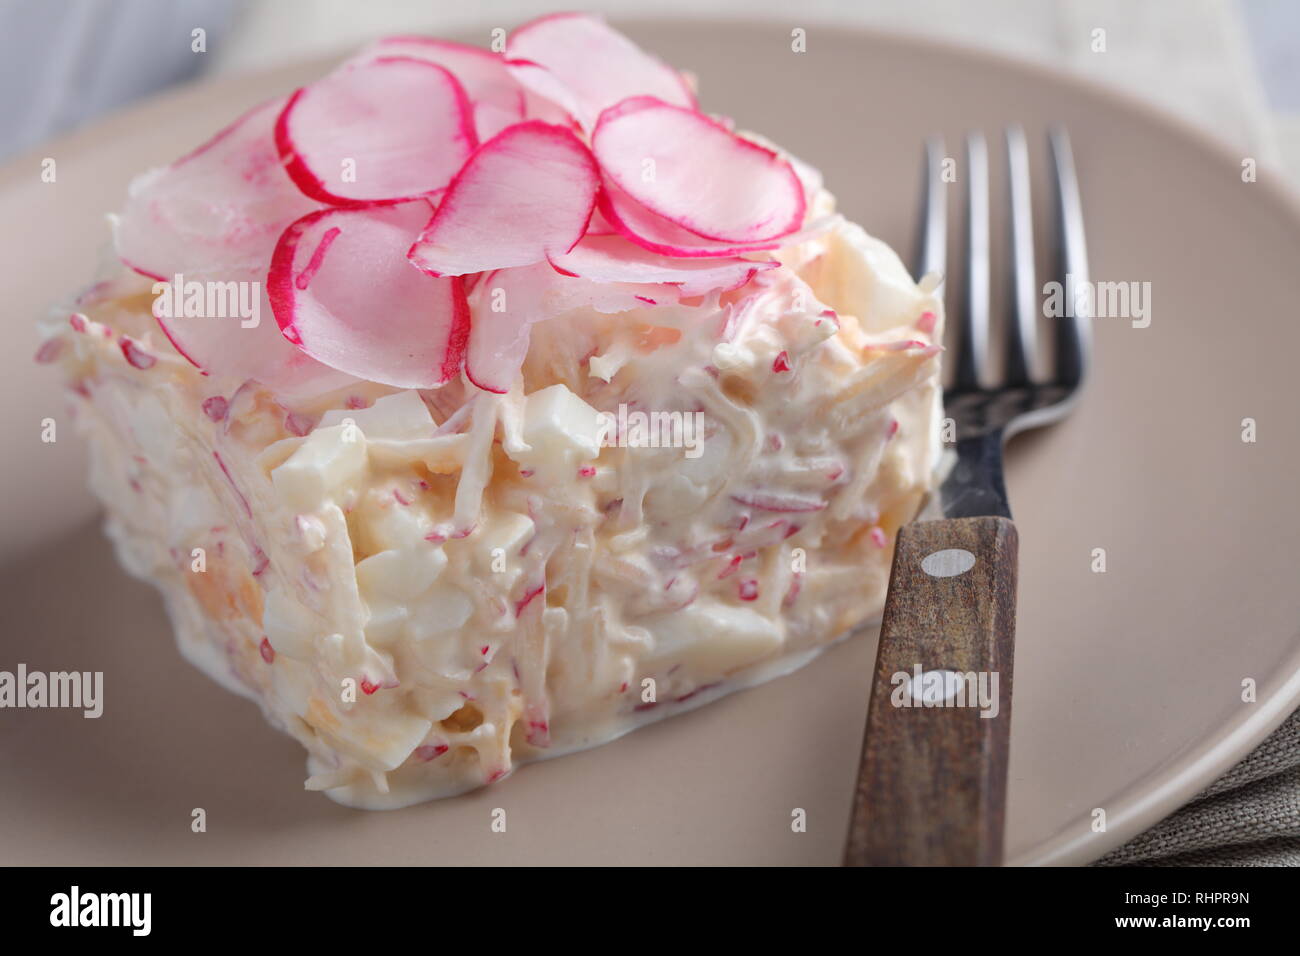 Porzione di molla con insalata di radicchio, uova sode, e panna acida Foto Stock